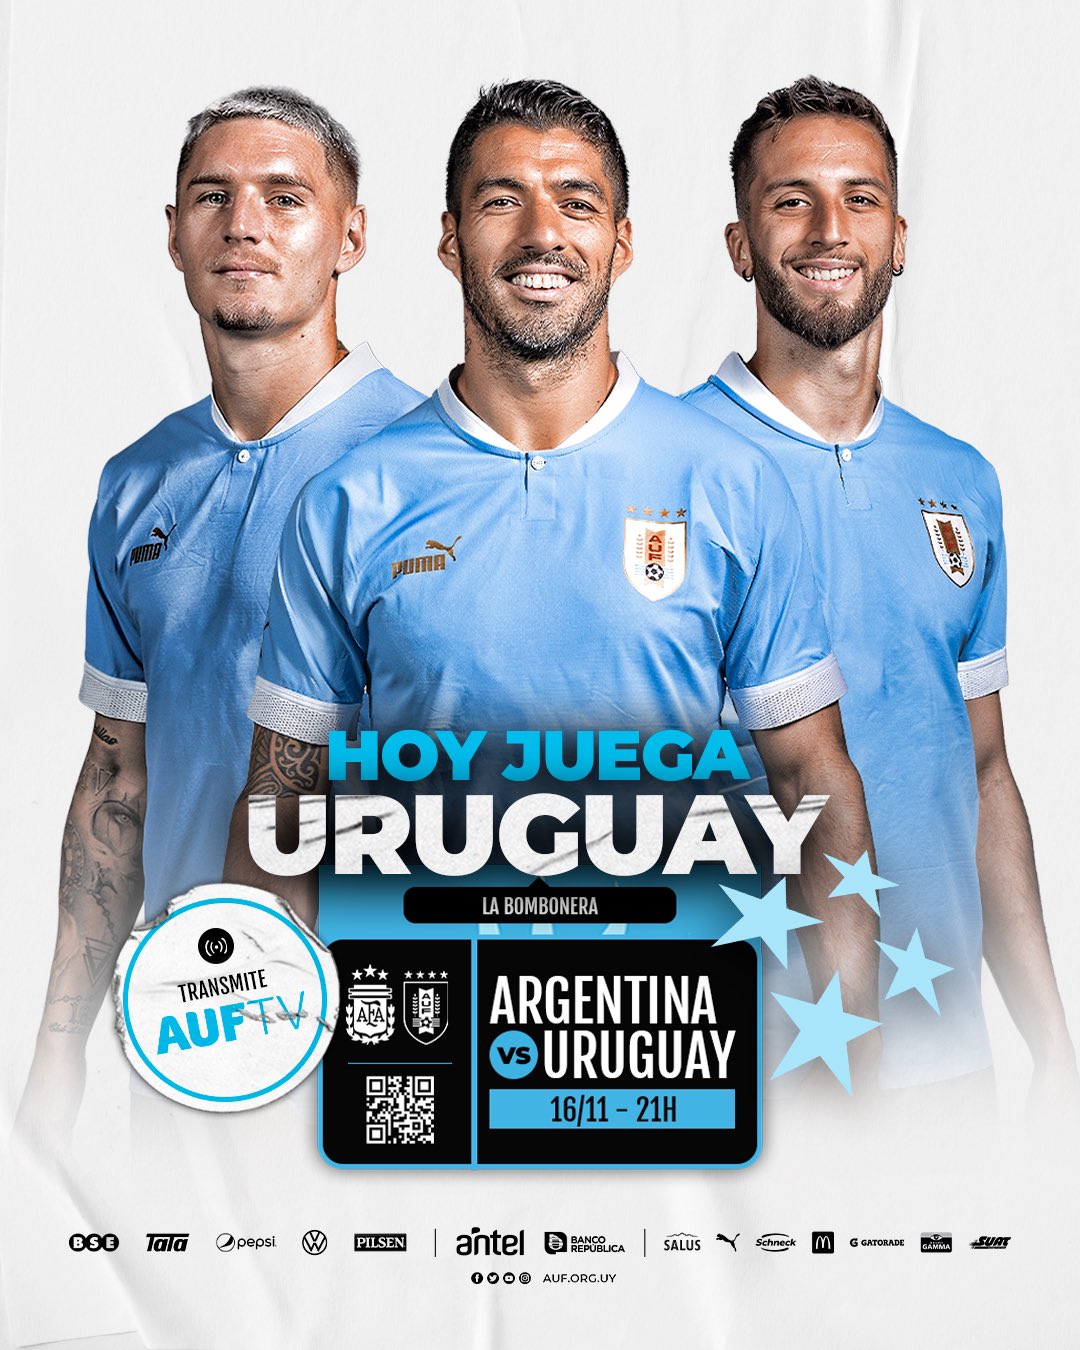 AUF - Selección Uruguaya de Fútbol - ¡Hoy juega Uruguay! #ElEquipoQueNosUne